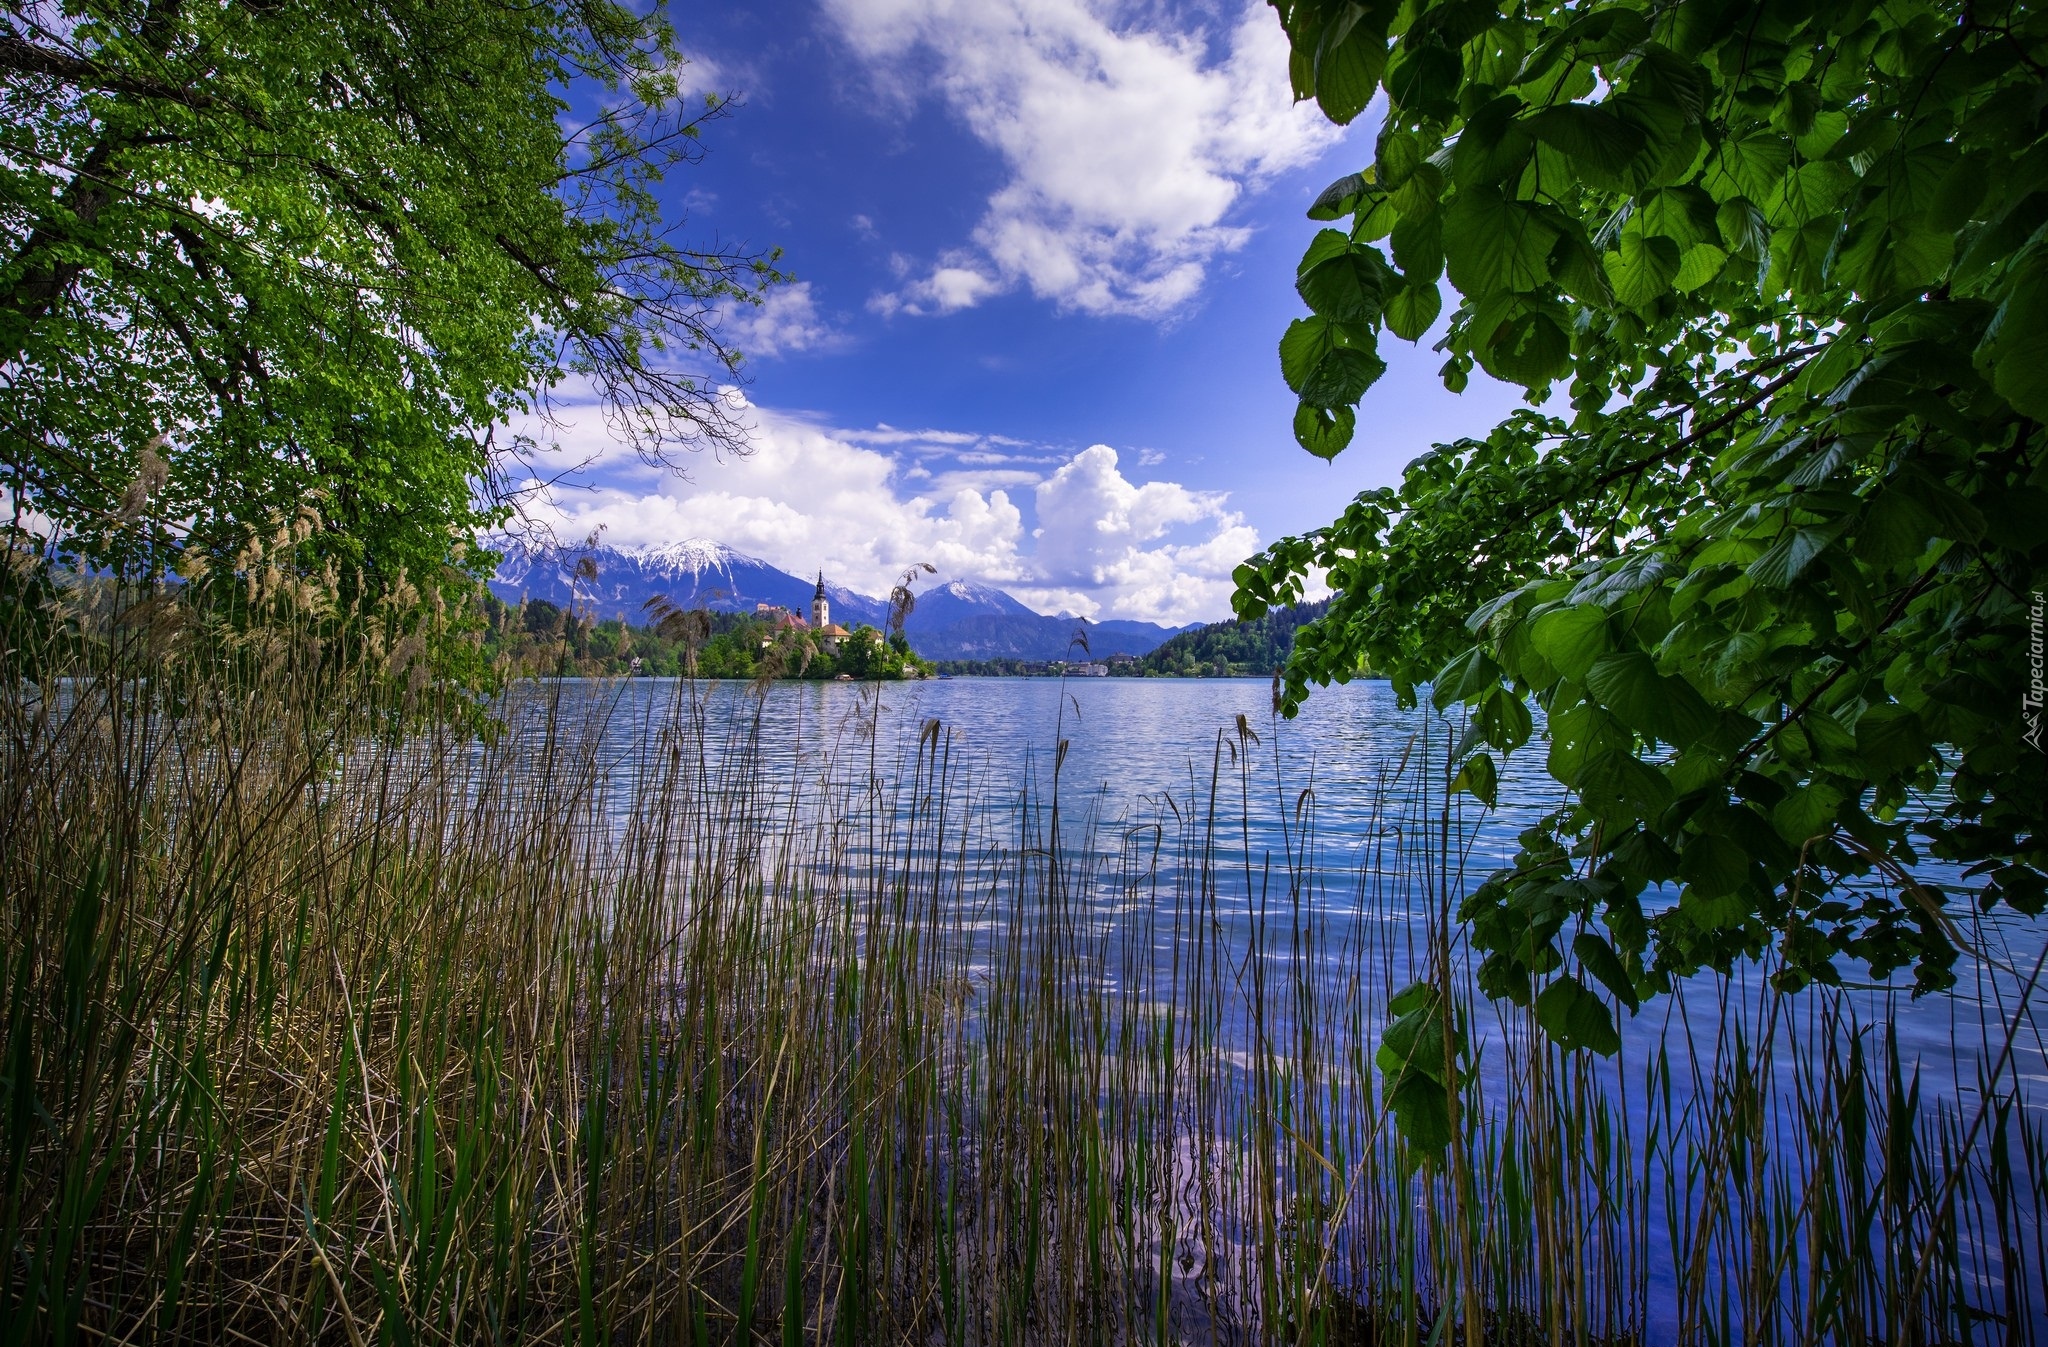 Jezioro Bled, Słowenia, Wyspa Blejski Otok, Kościół, Drzewa, Trzciny